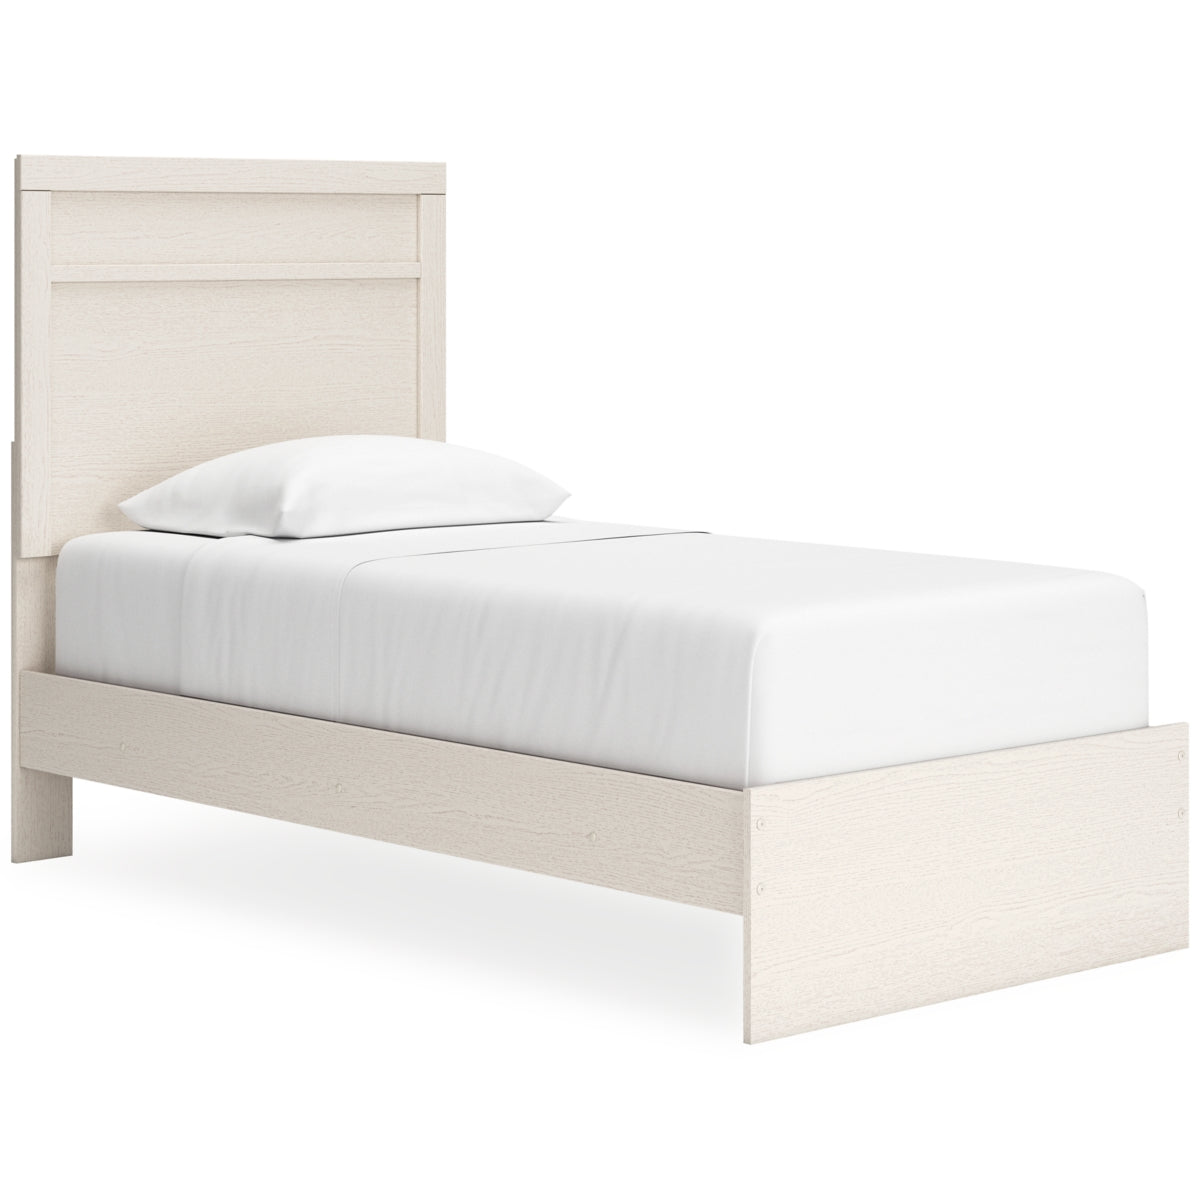 Stelsie Twin Panel Bed